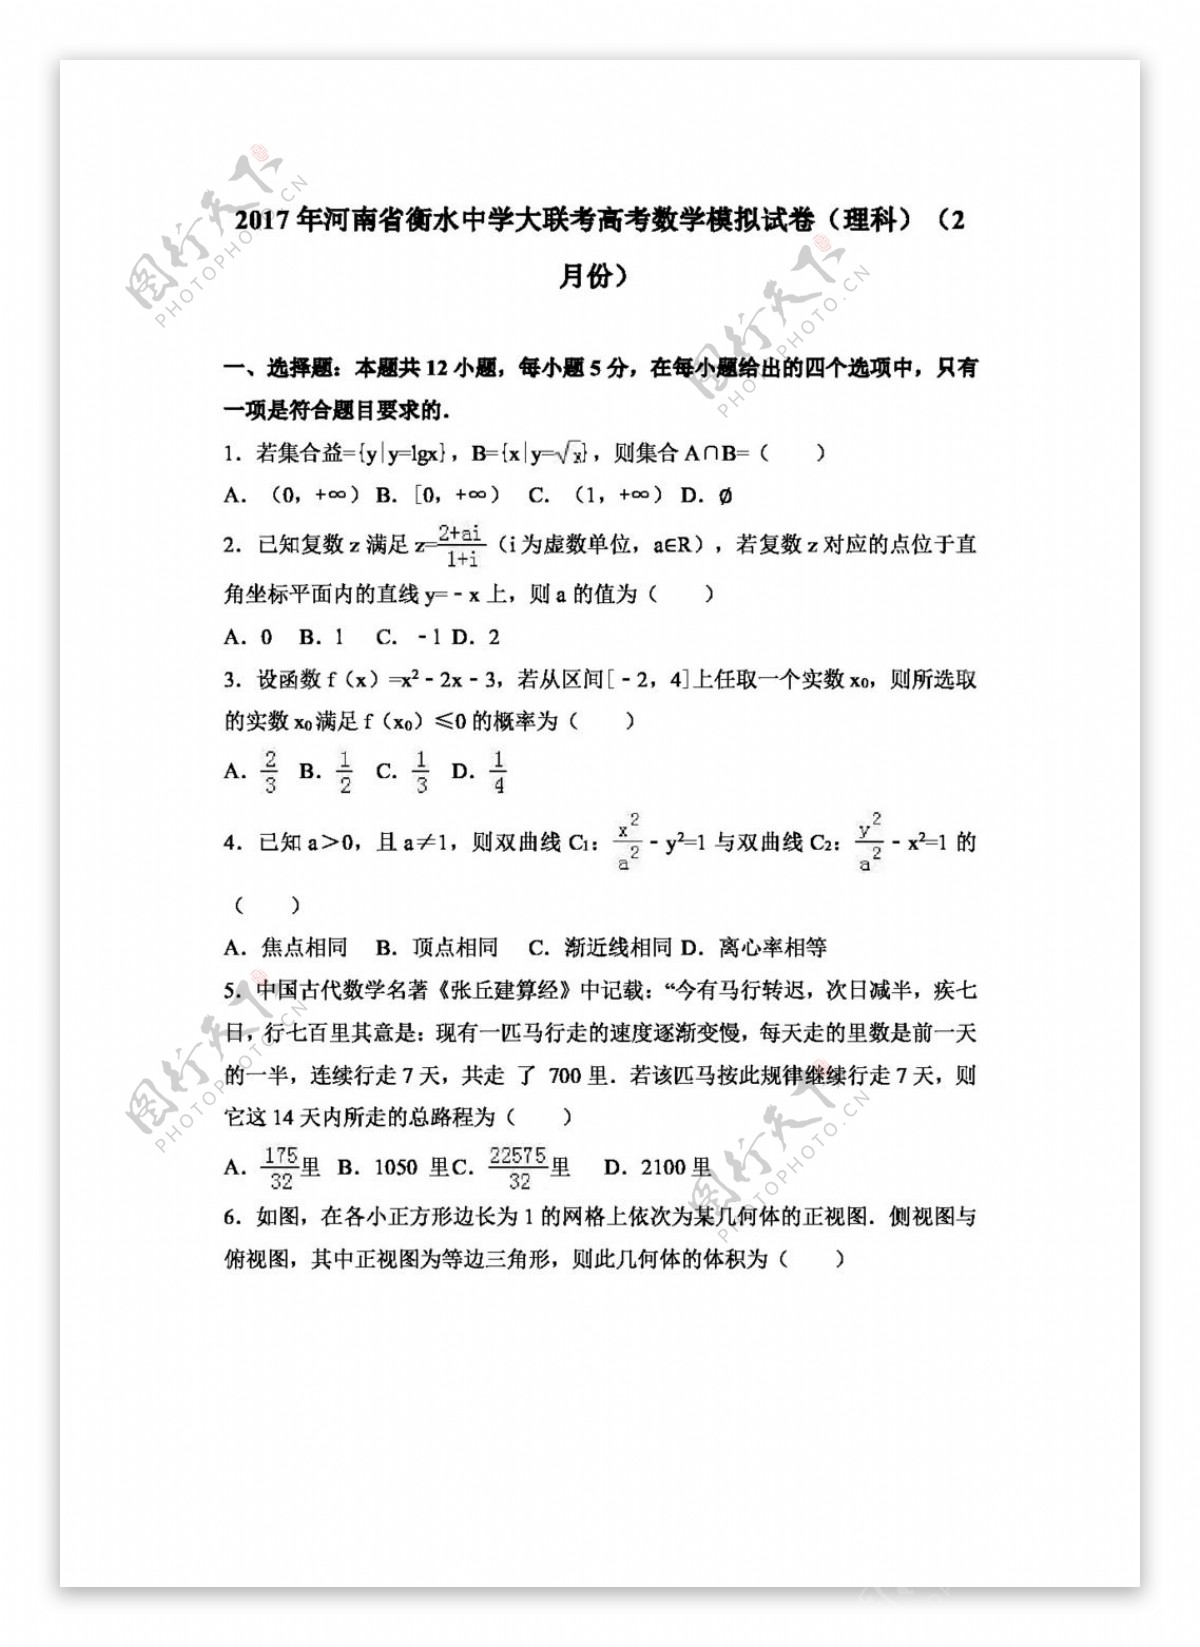 数学人教版2017年河南省衡水中学大联考高考数学模拟试卷理科2月份